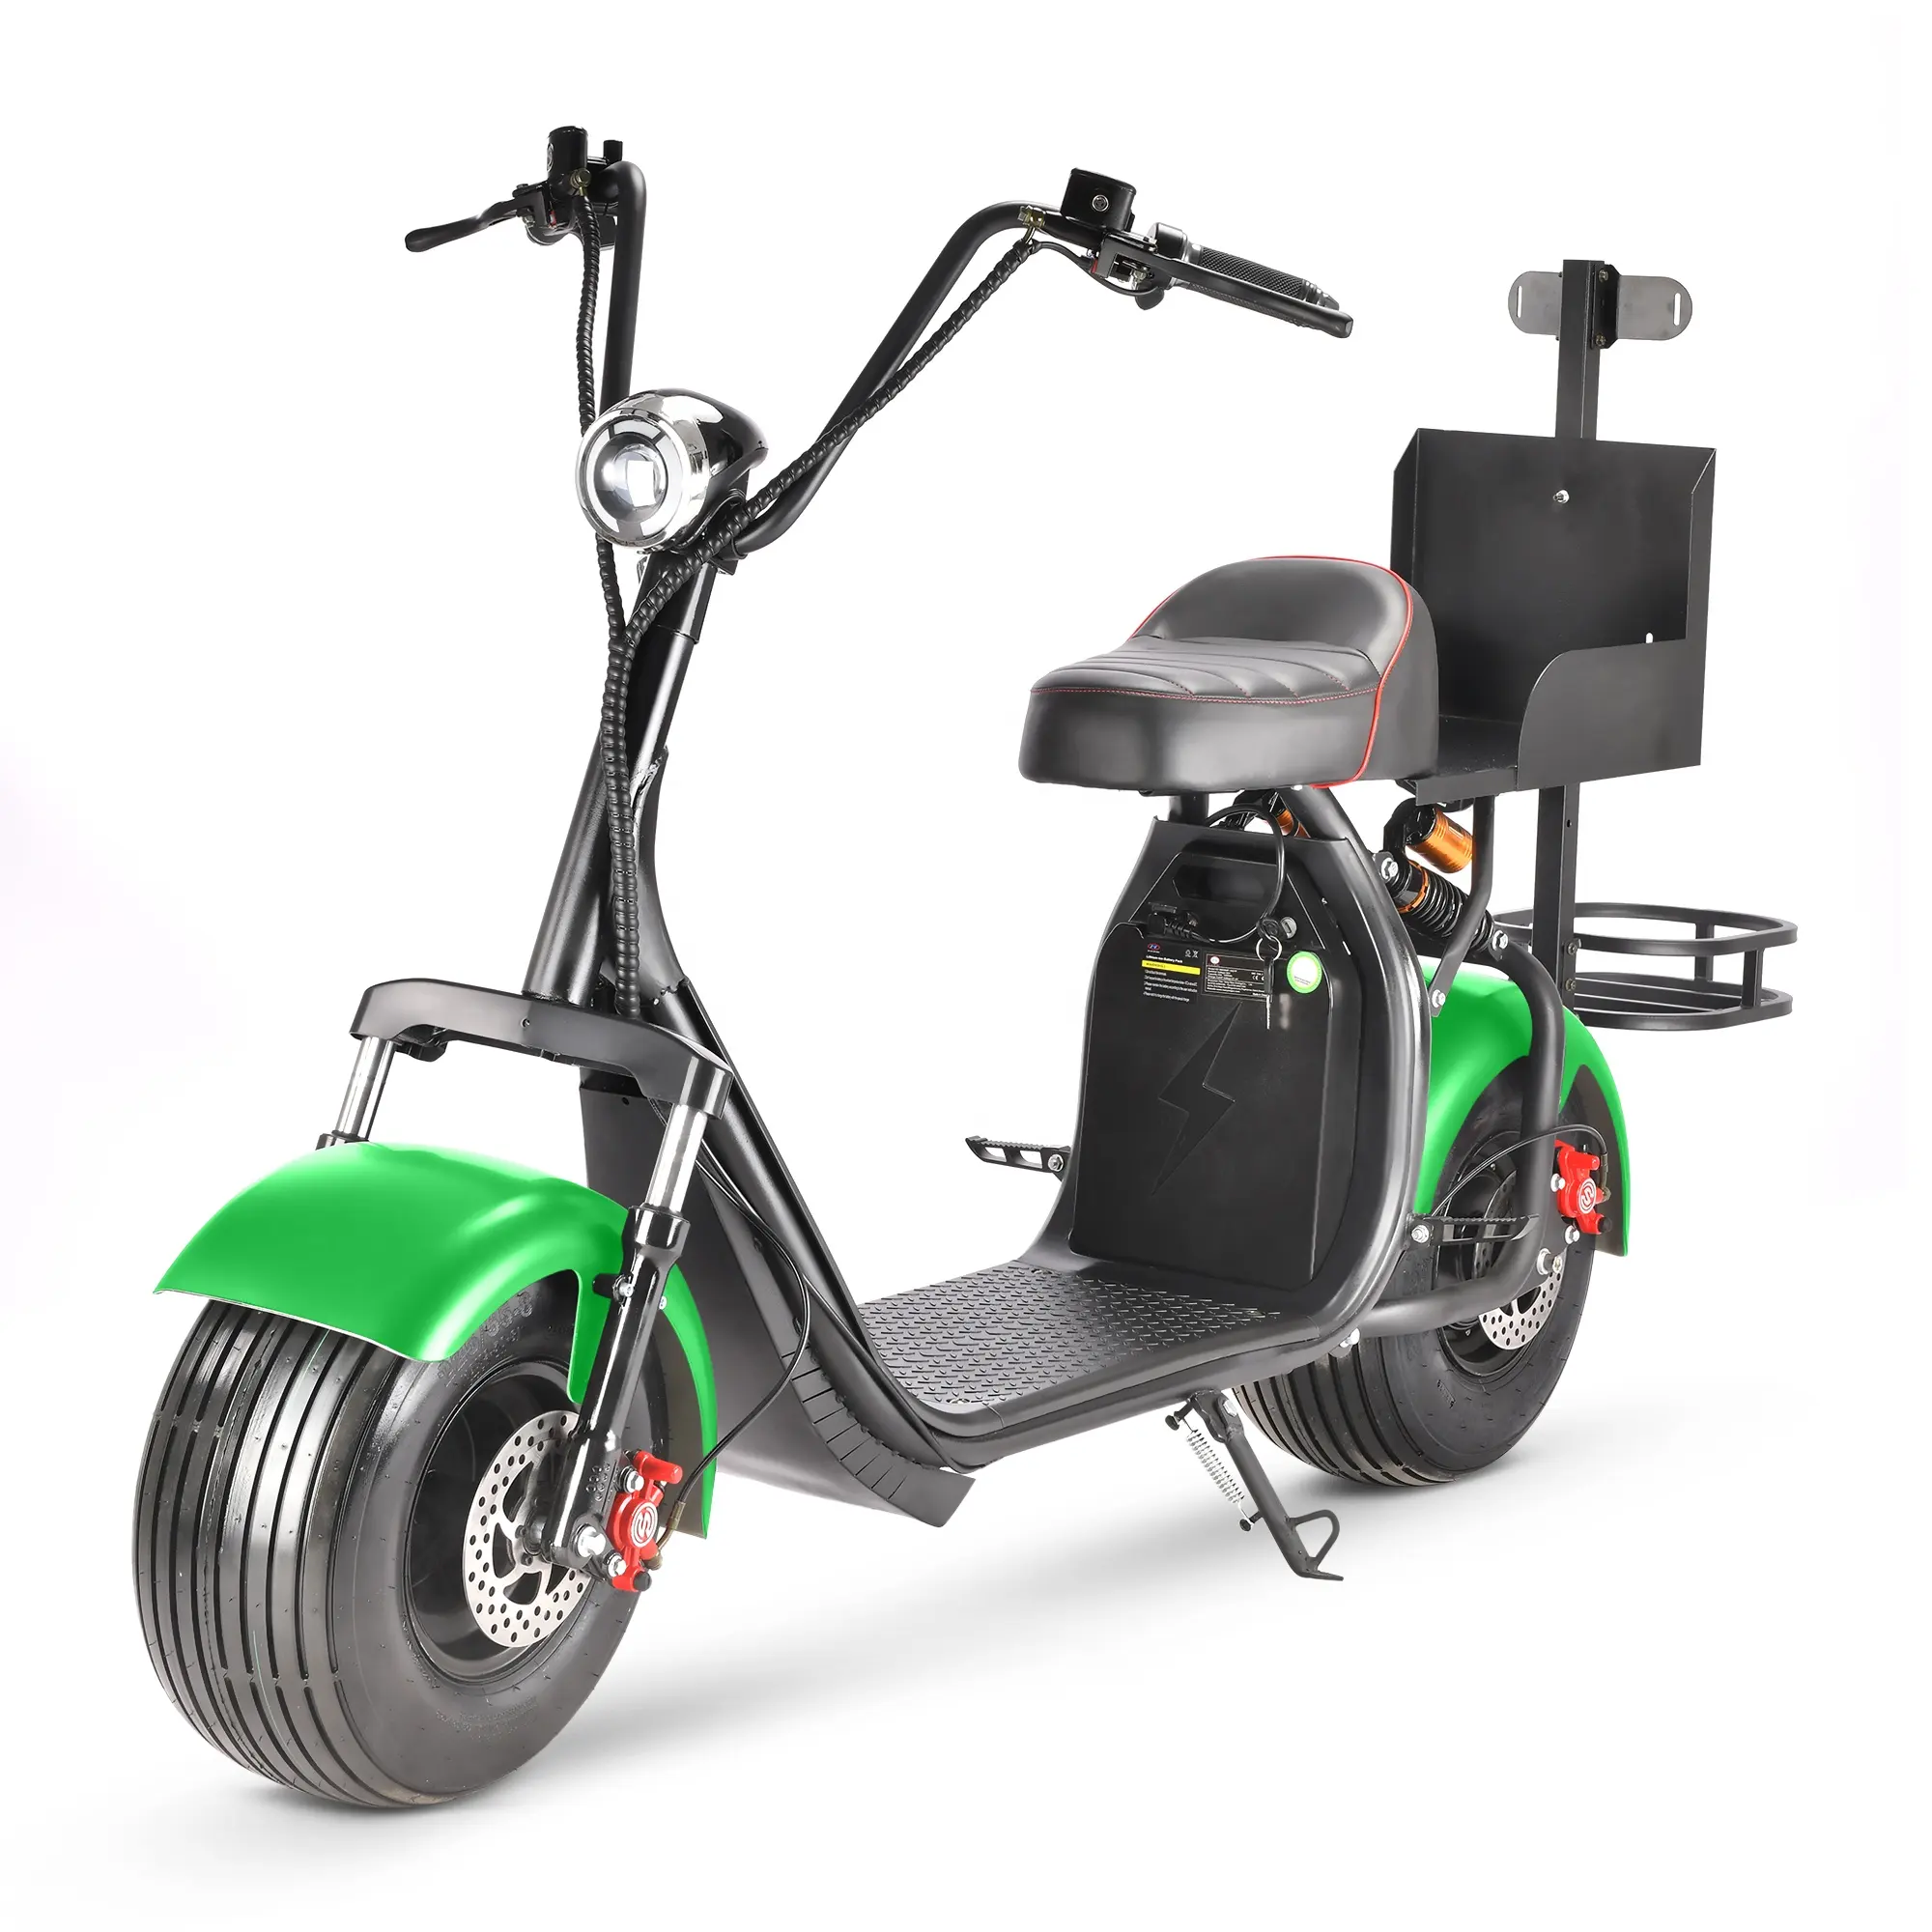 2023 tout nouveau prix d'usine conçu voiturettes de golf buggies voiturette de golf électrique scooter de golf citycoco chopper scooters vélos